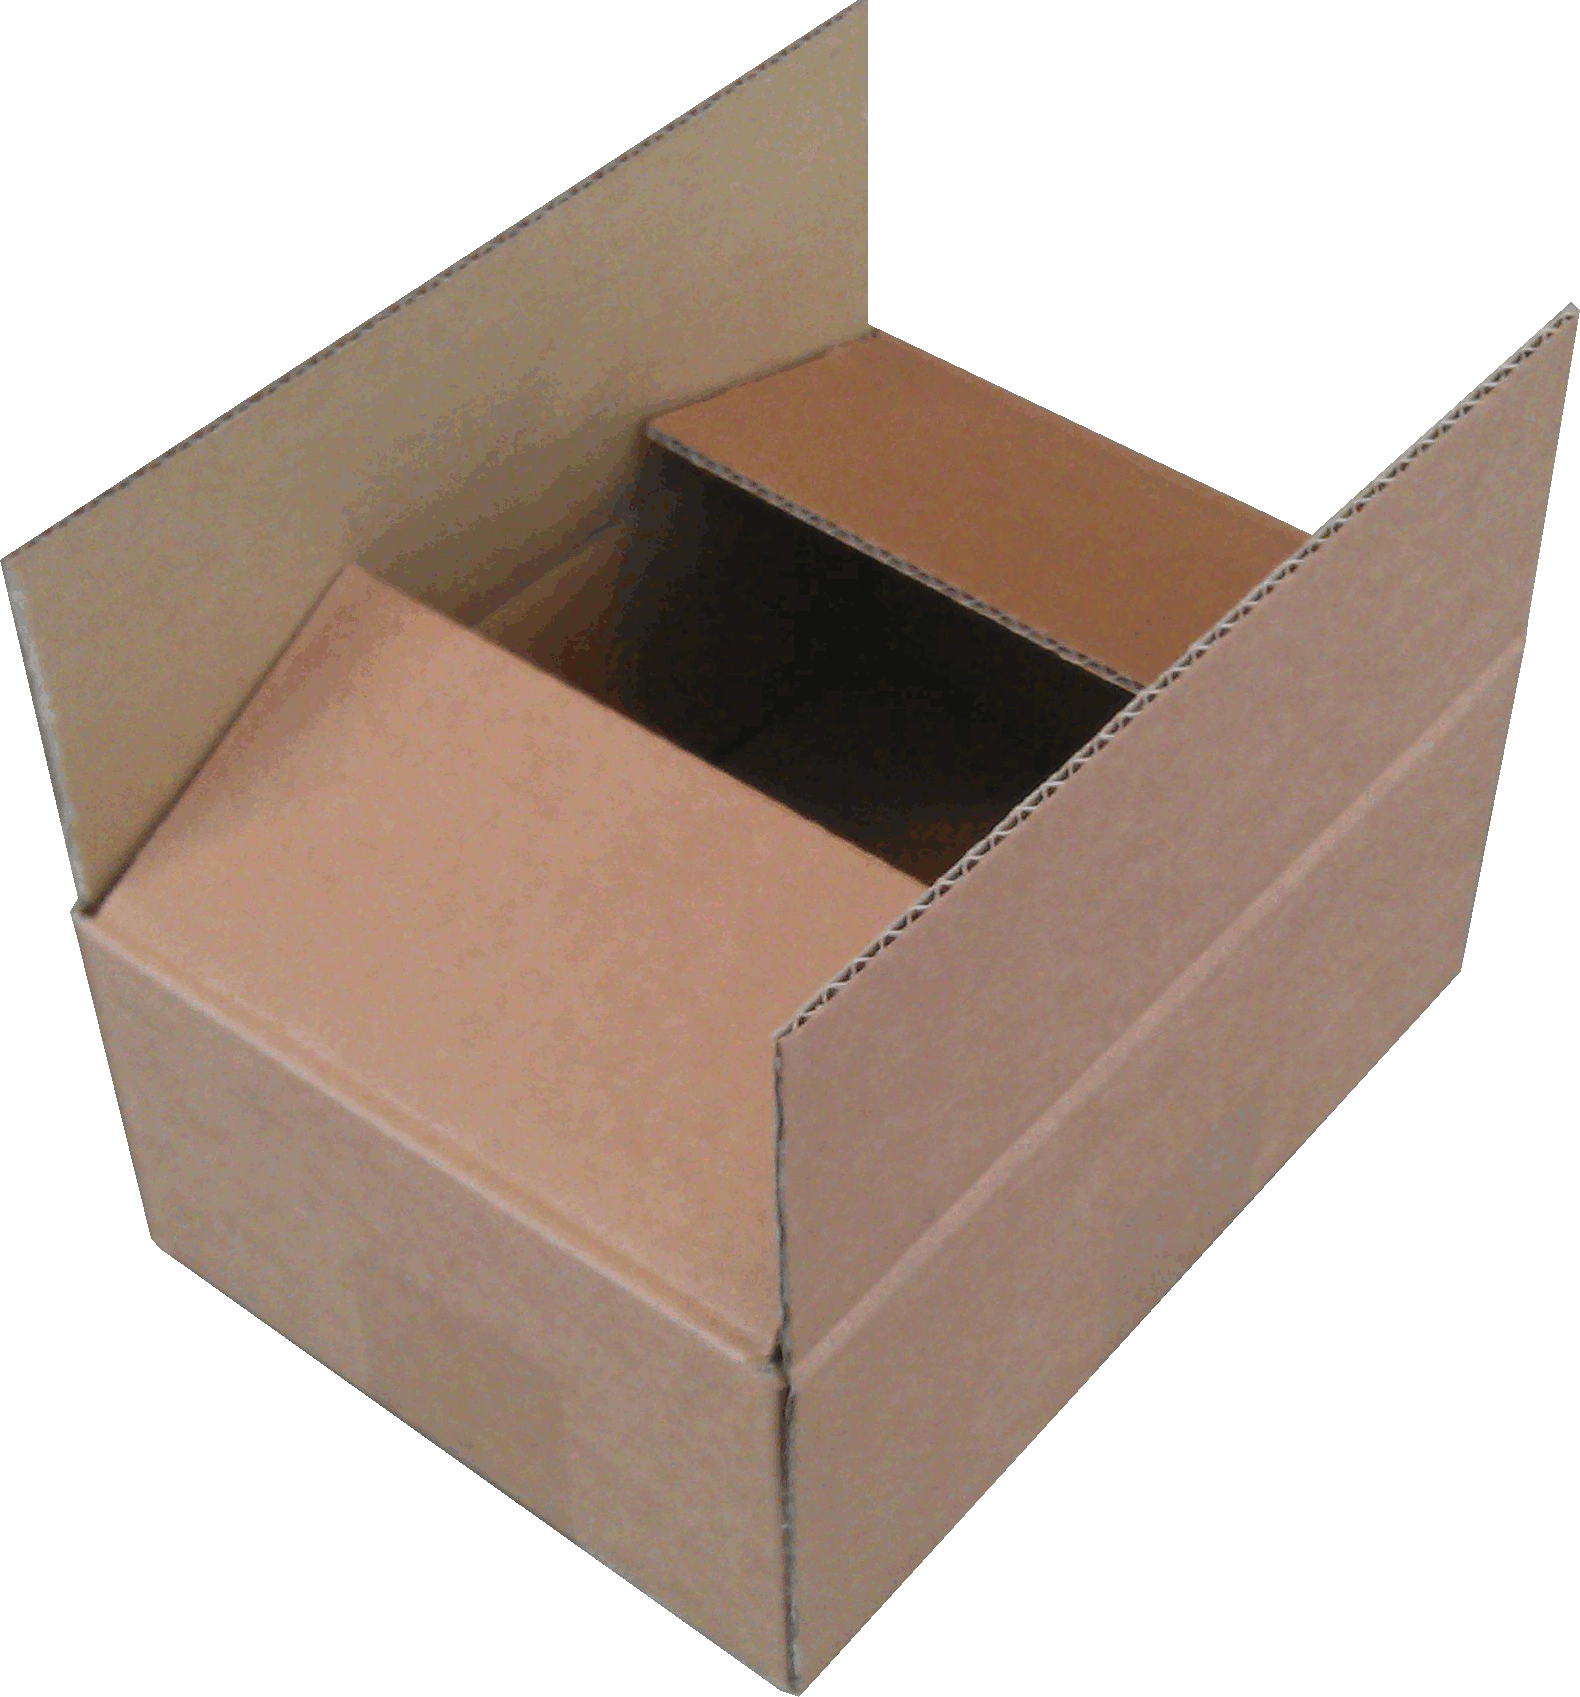 Kartonnen doos. 247x188x235 mm, 4 mm dik, bruin karton